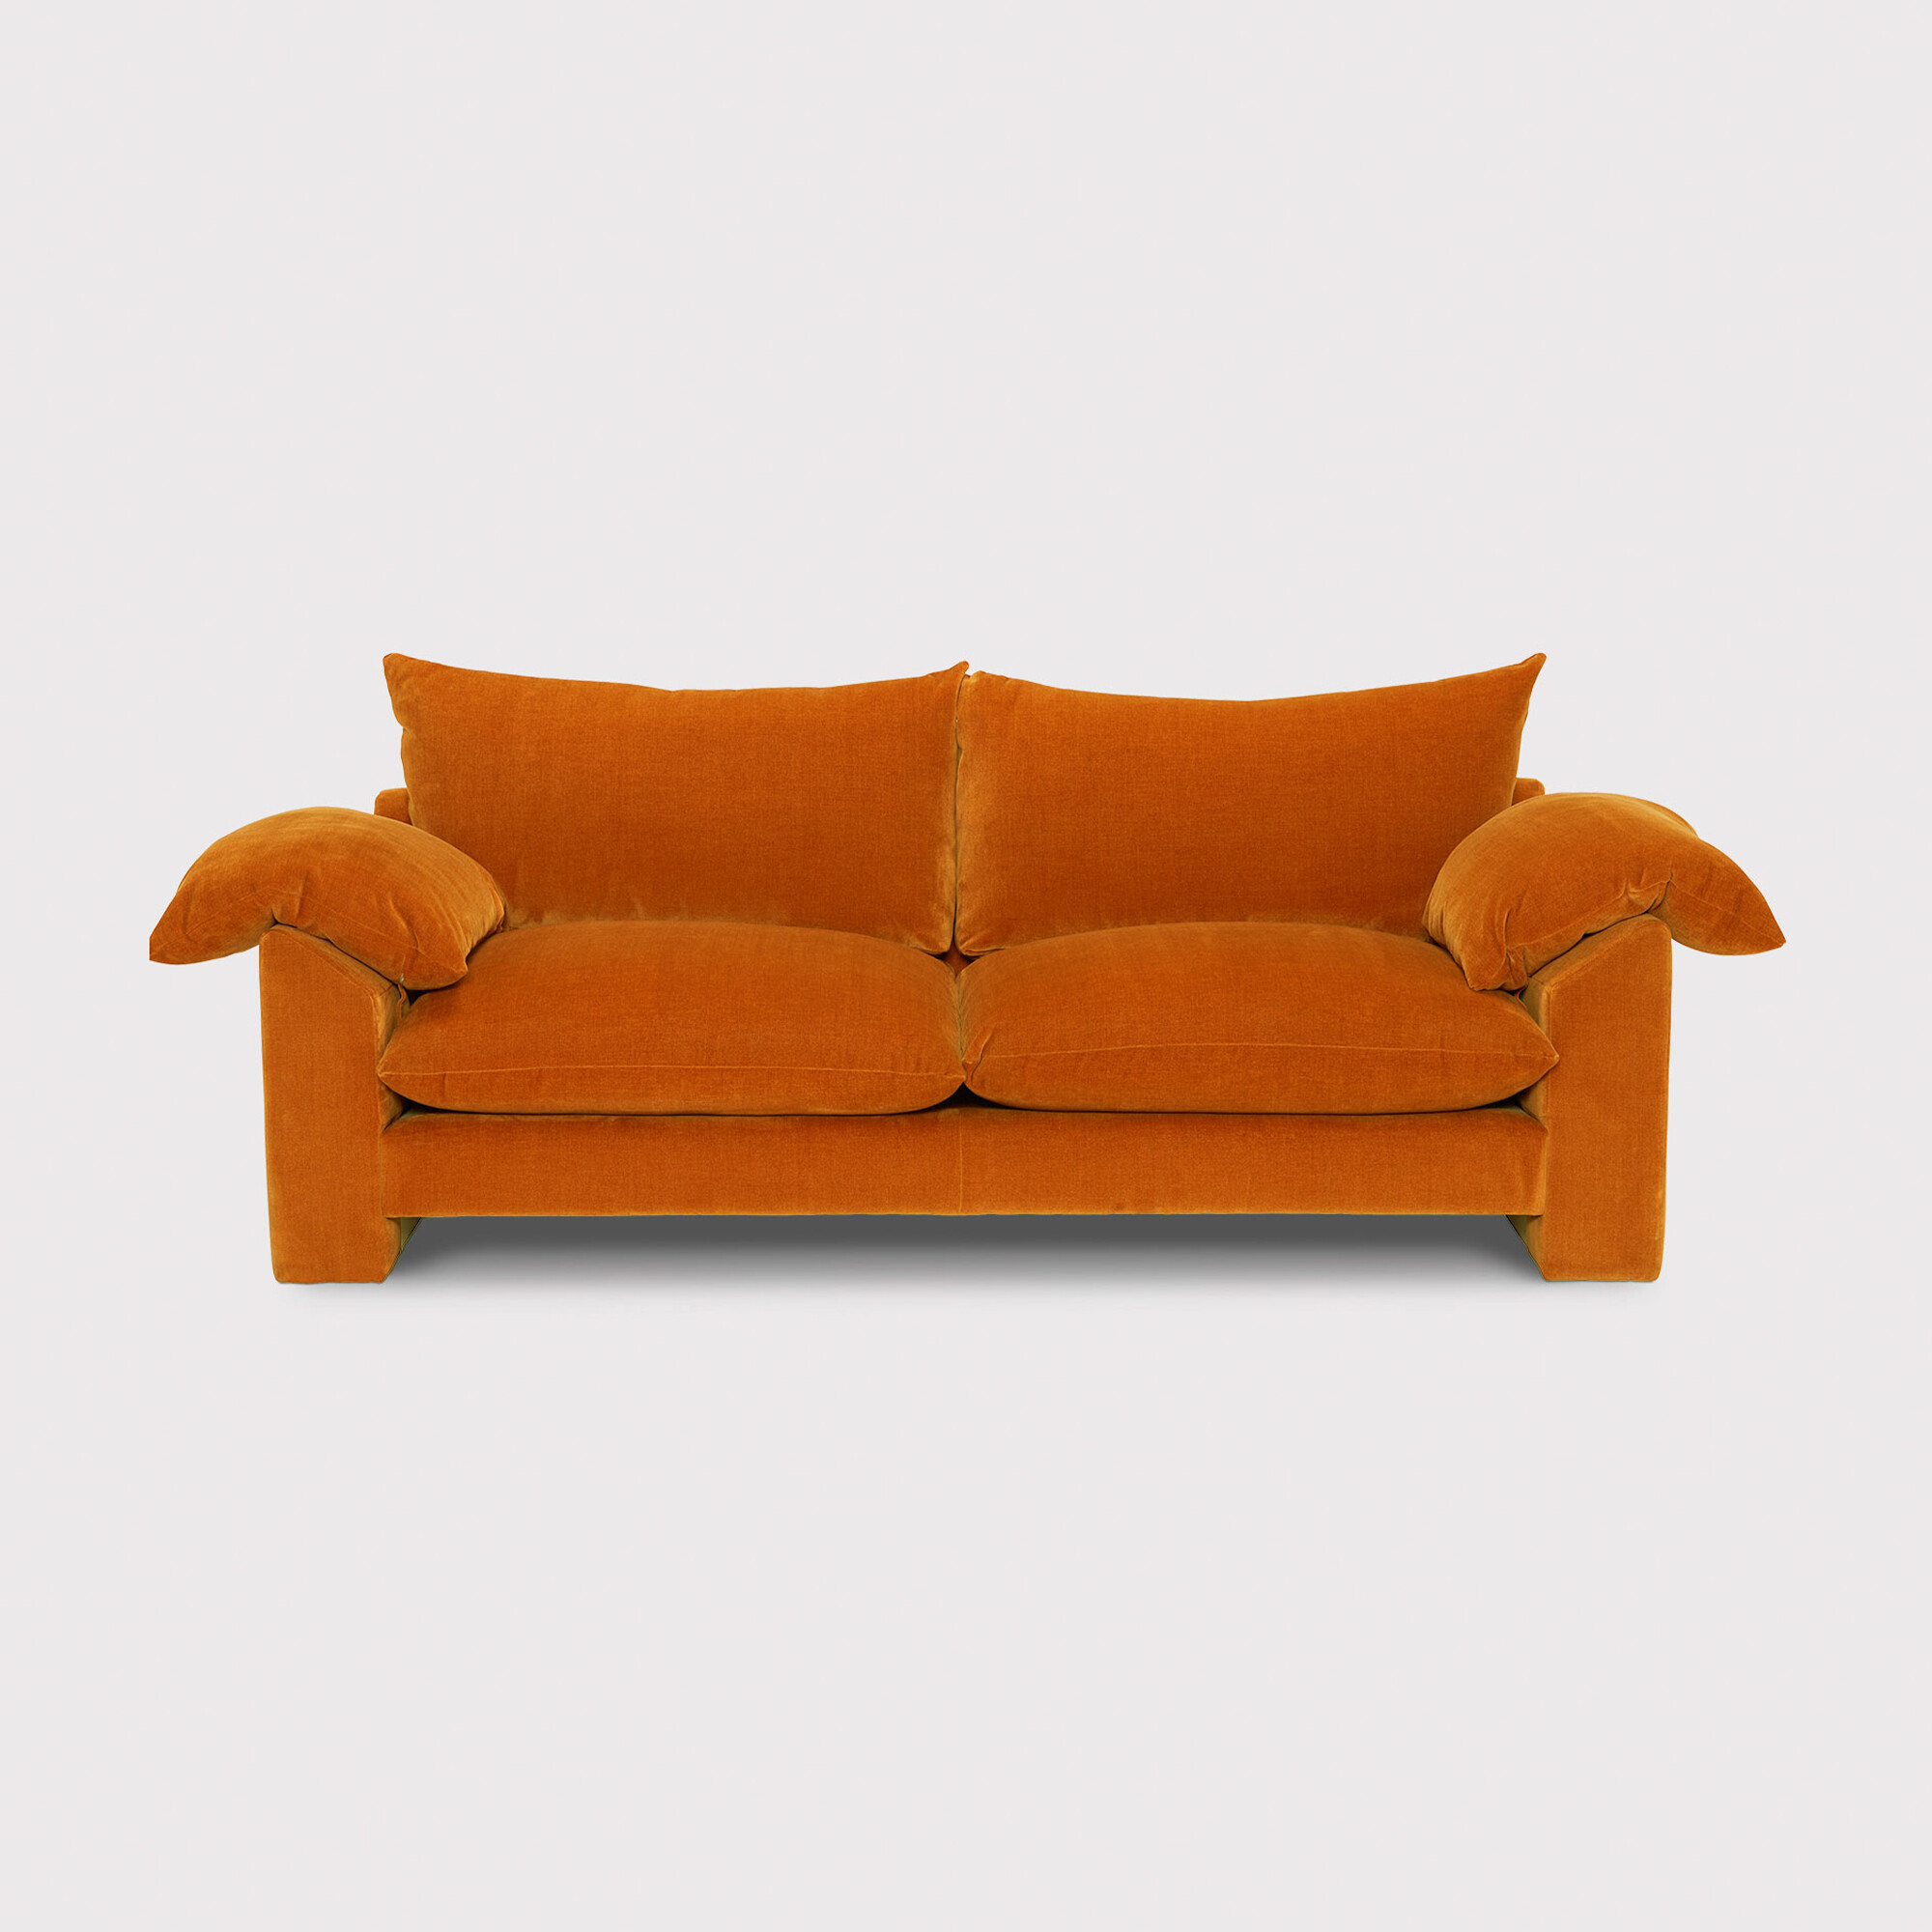 Hoxton Large Sofa, Orange Fabric | Barker & Stonehouse